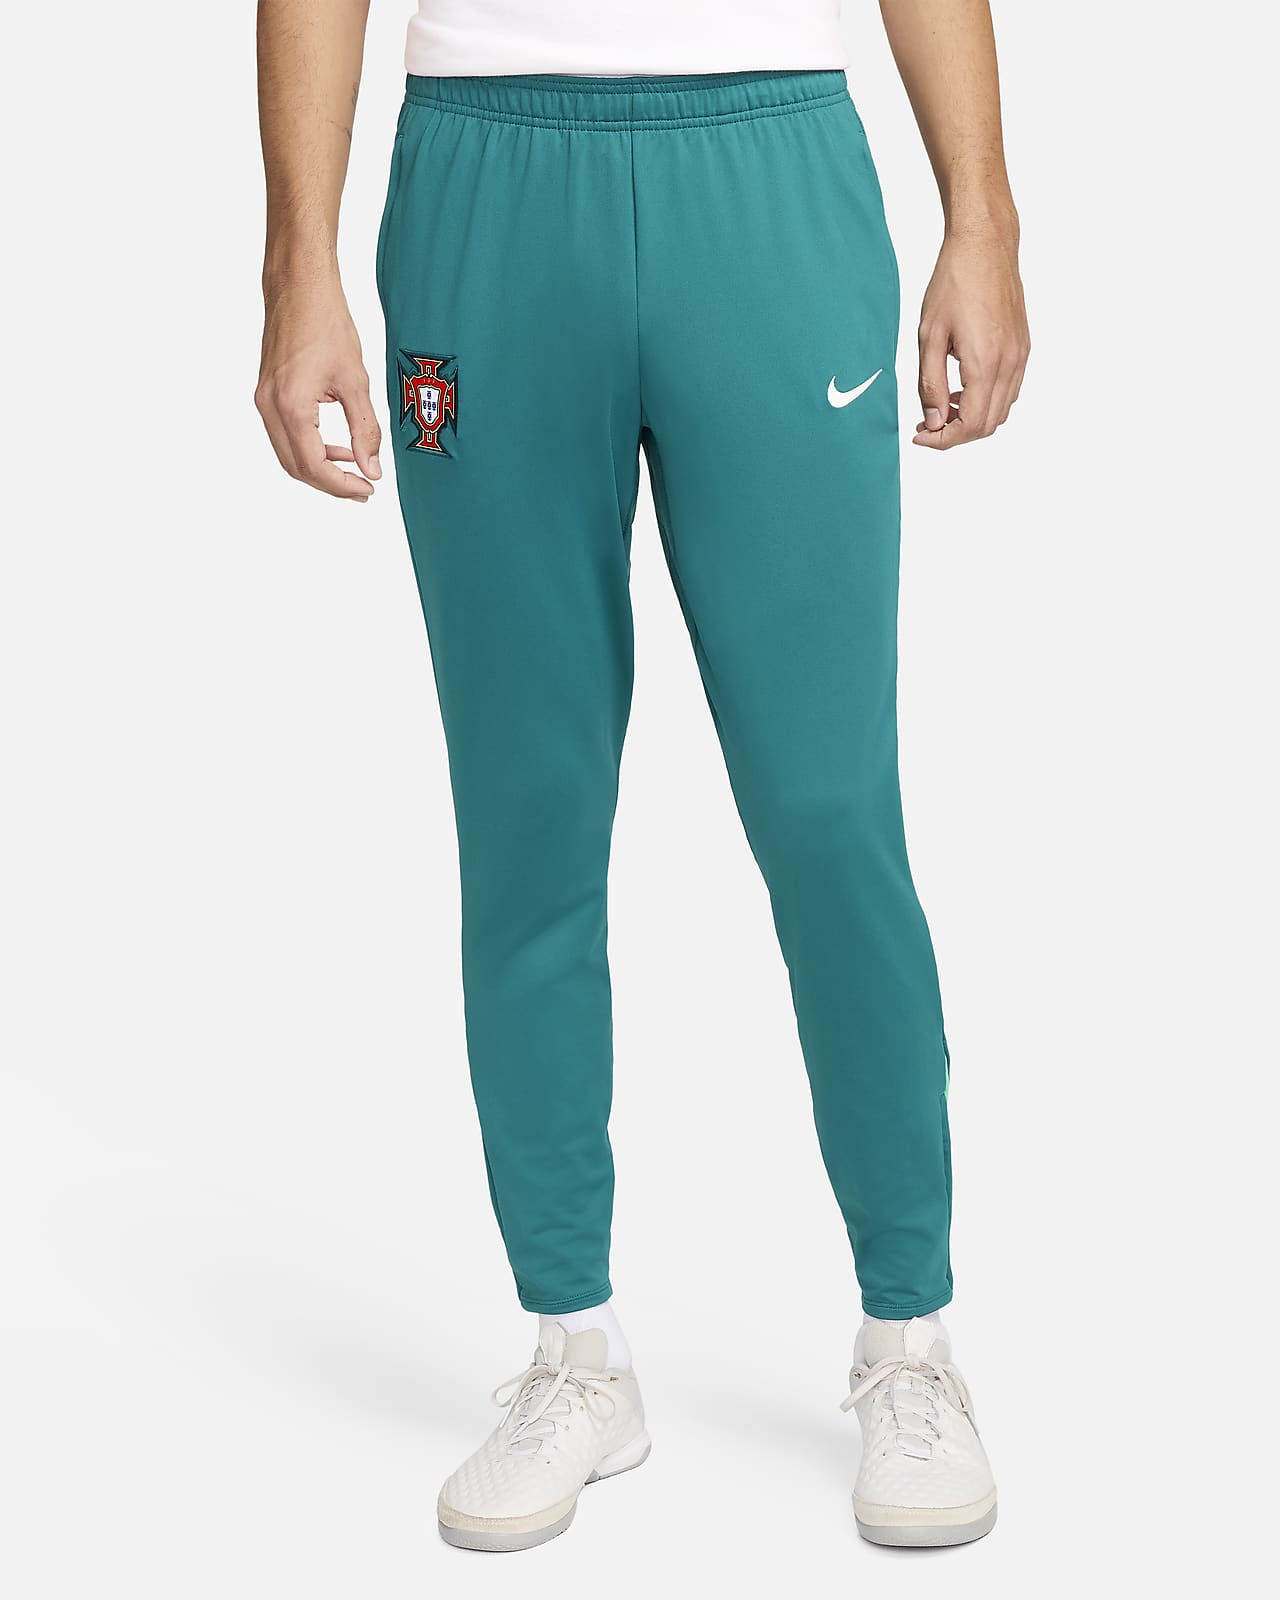 Portugal Strike Nike Dri-FIT strikket fotballbukse til herre